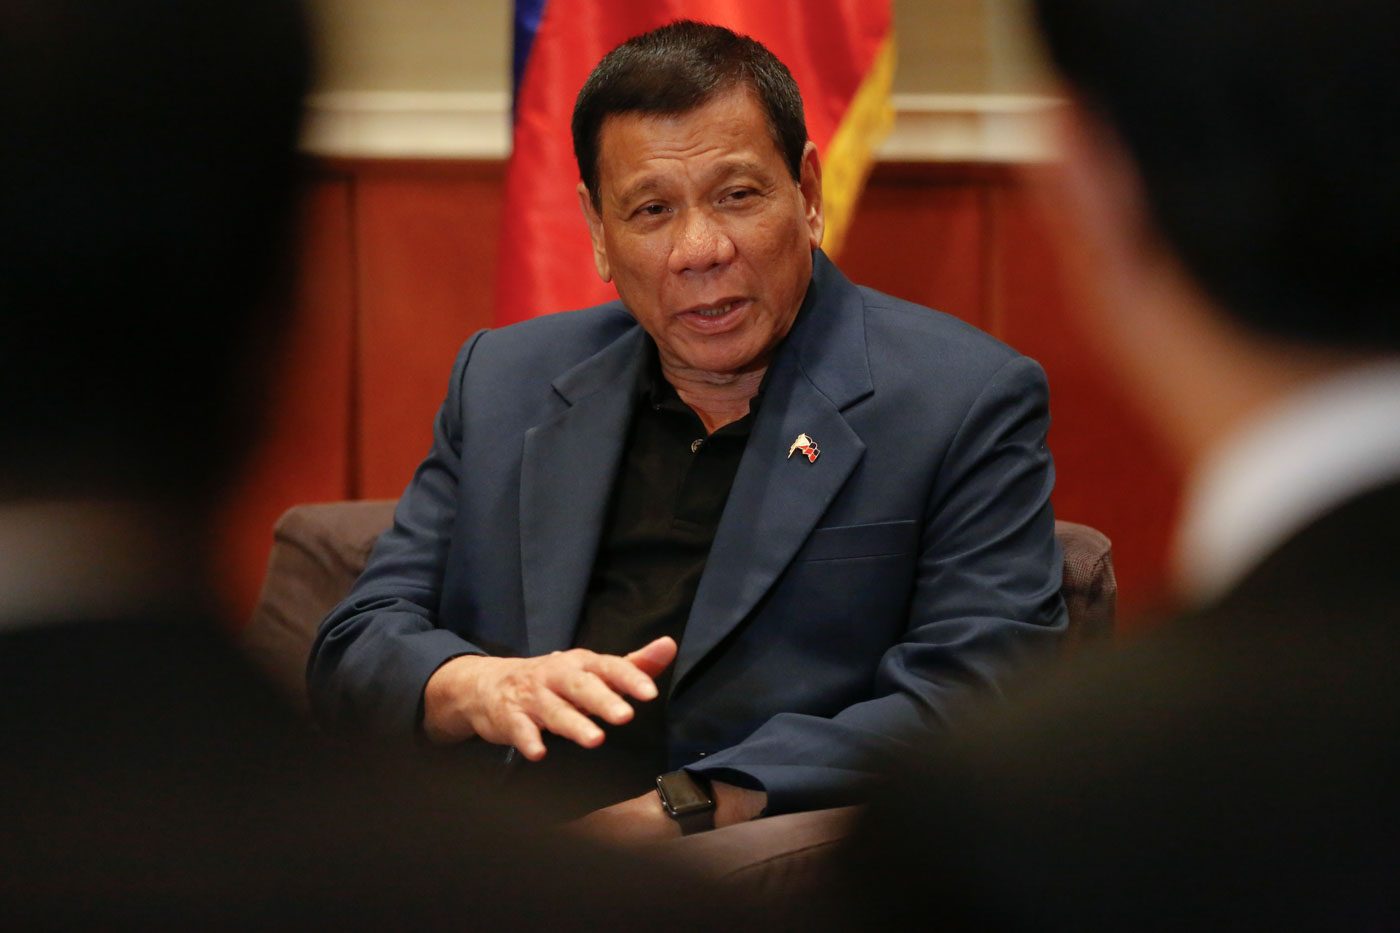 2 oil exploration contracts awaiting Duterte’s signature – Cusi